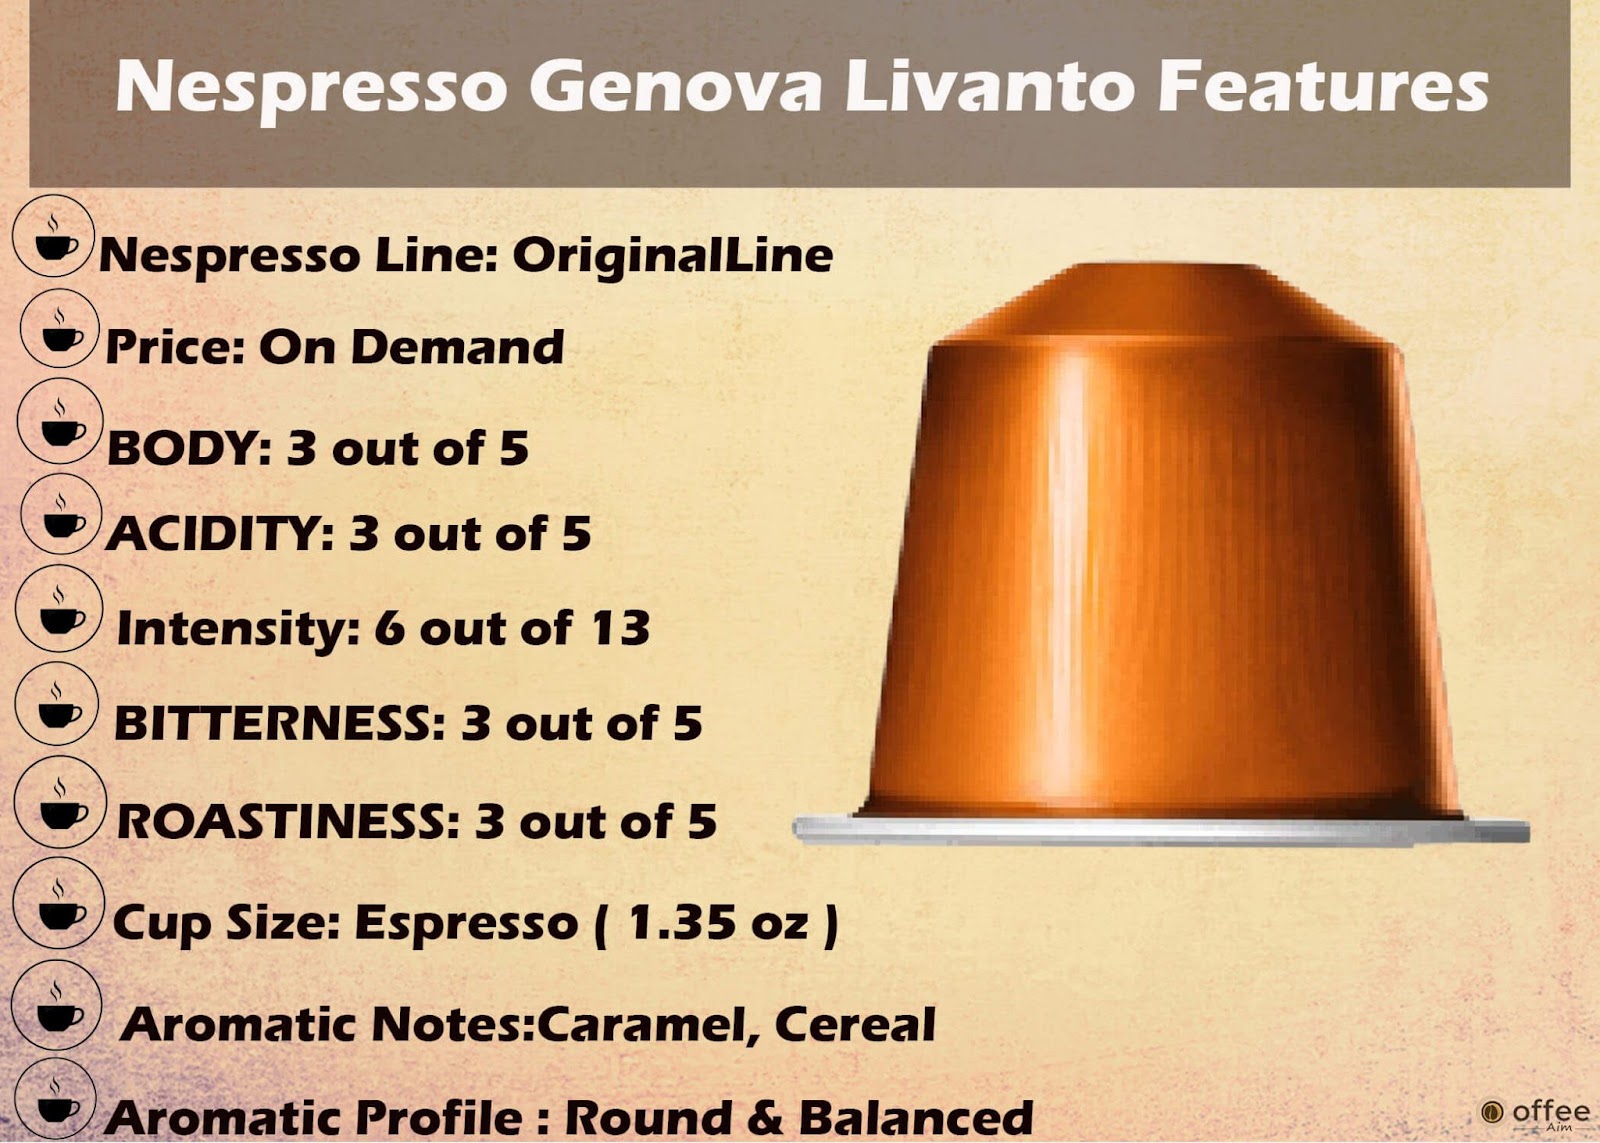 Features Chart of Nespresso Genova Livanto Original Line Capsule.